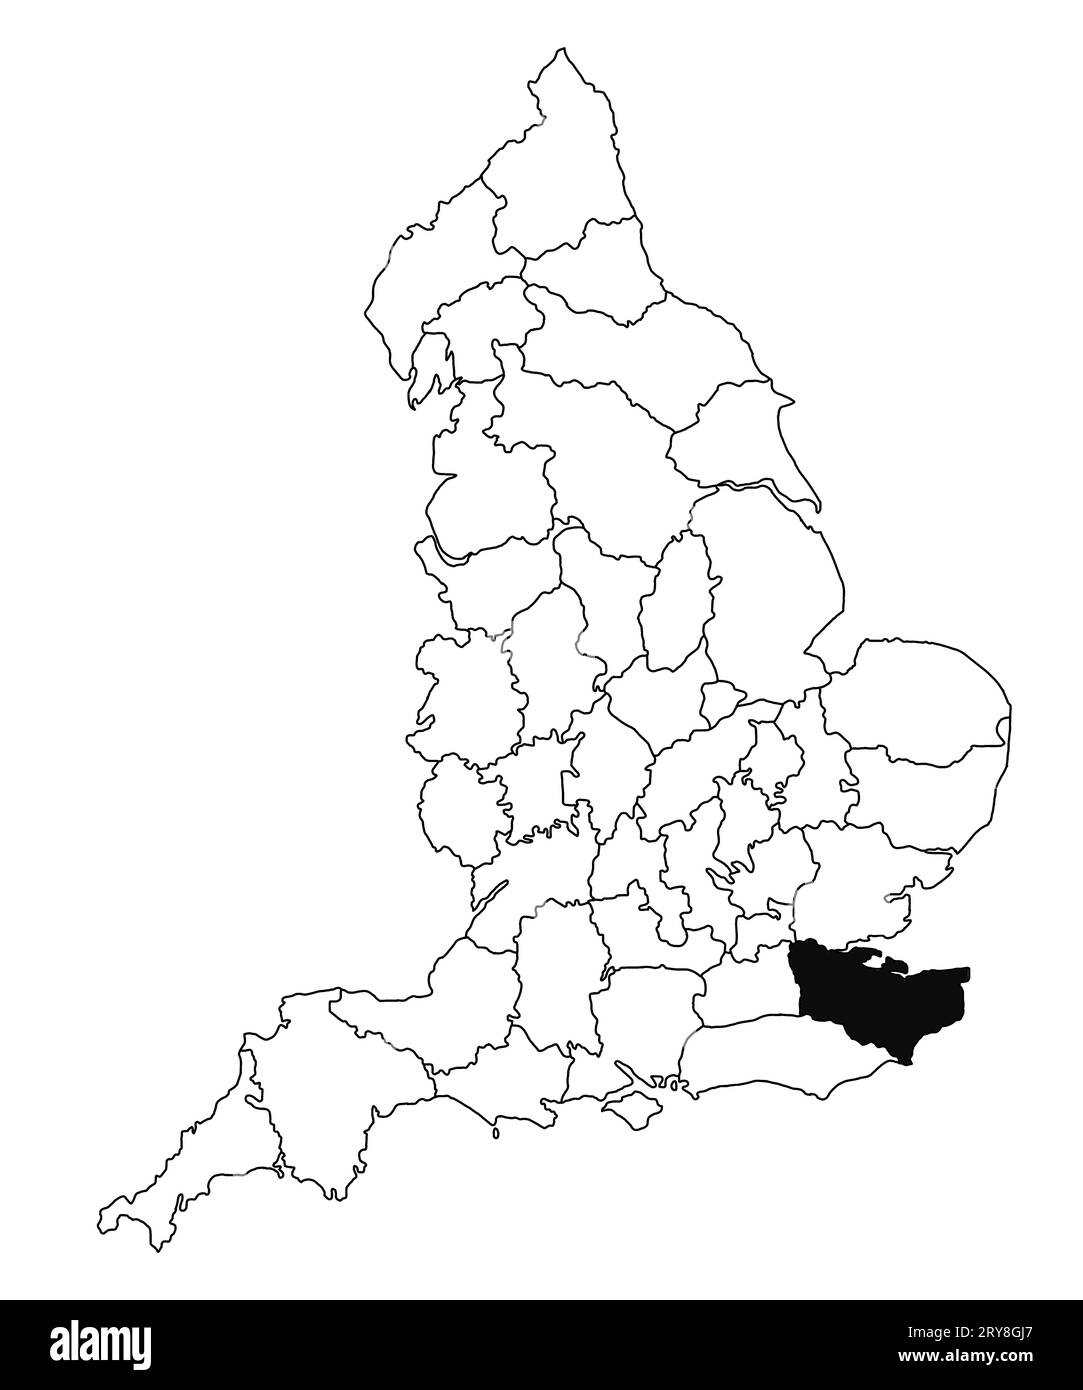 Mappa della contea di Kent in Inghilterra su sfondo bianco. Mappa singola della contea evidenziata da colore nero sulla mappa amministrativa dell'Inghilterra. Regno Unito, Brita Foto Stock